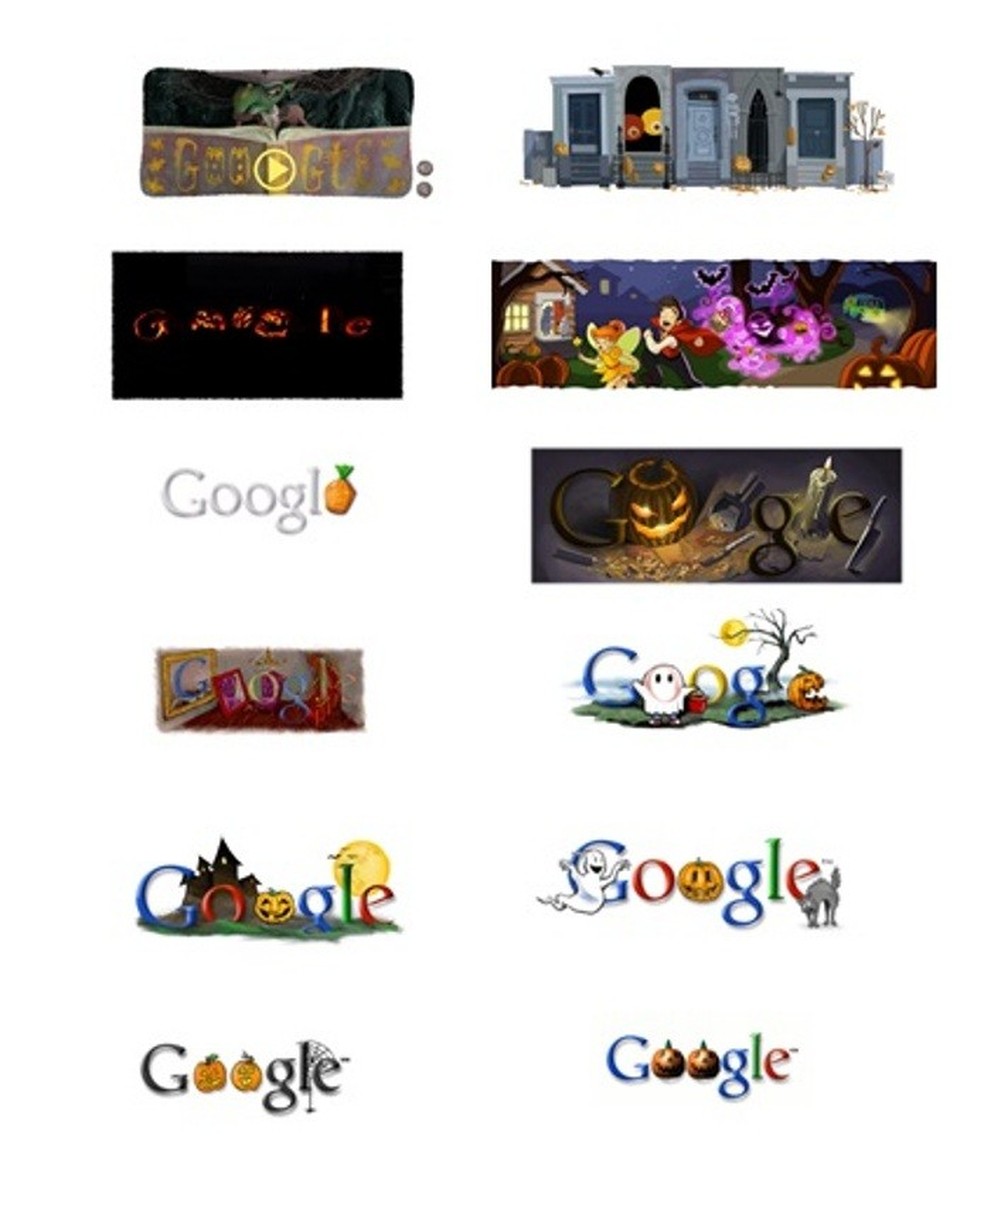 Halloween é celebrado pelo Google em doodle assustador